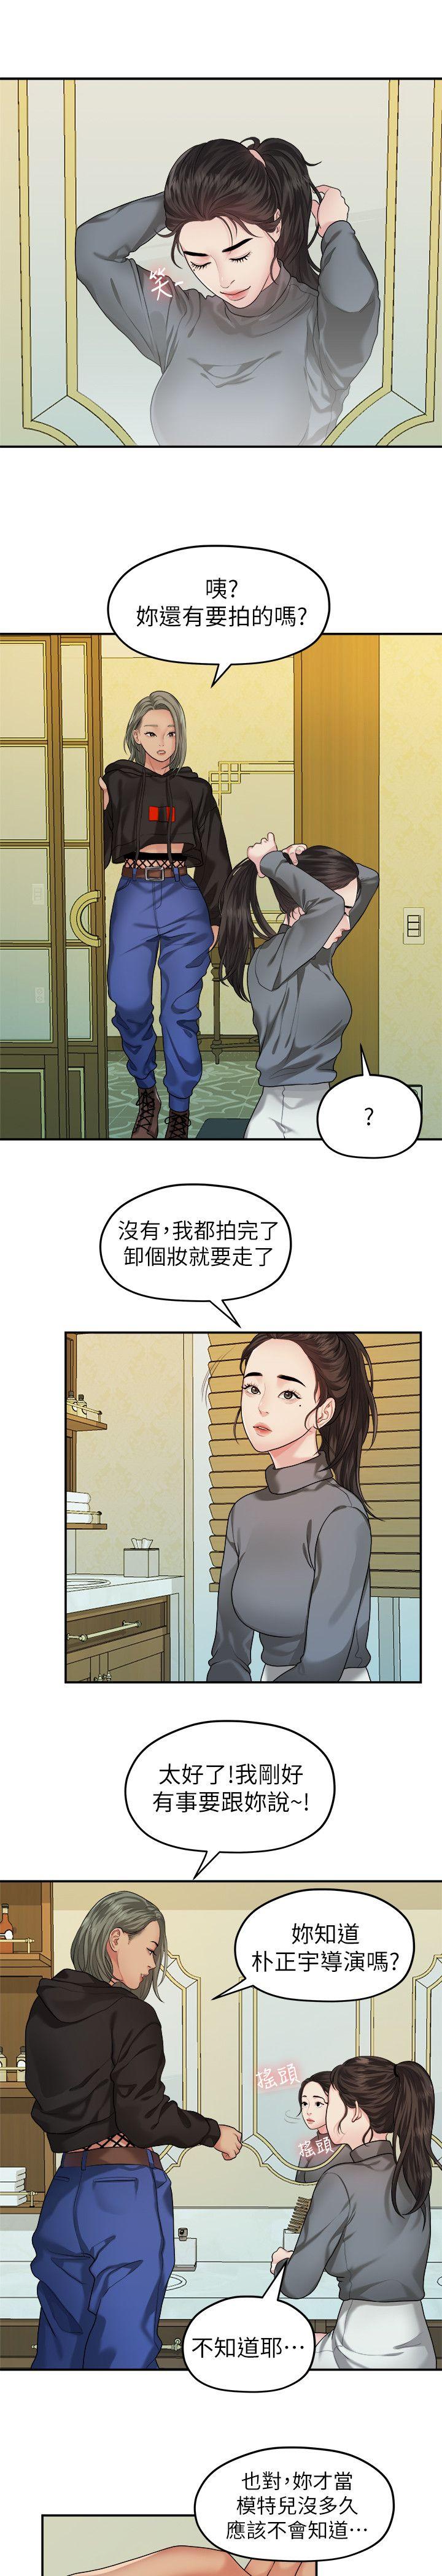 韩国污漫画 我們的非常關系 第42话-忘掉上一段恋情的方法 9